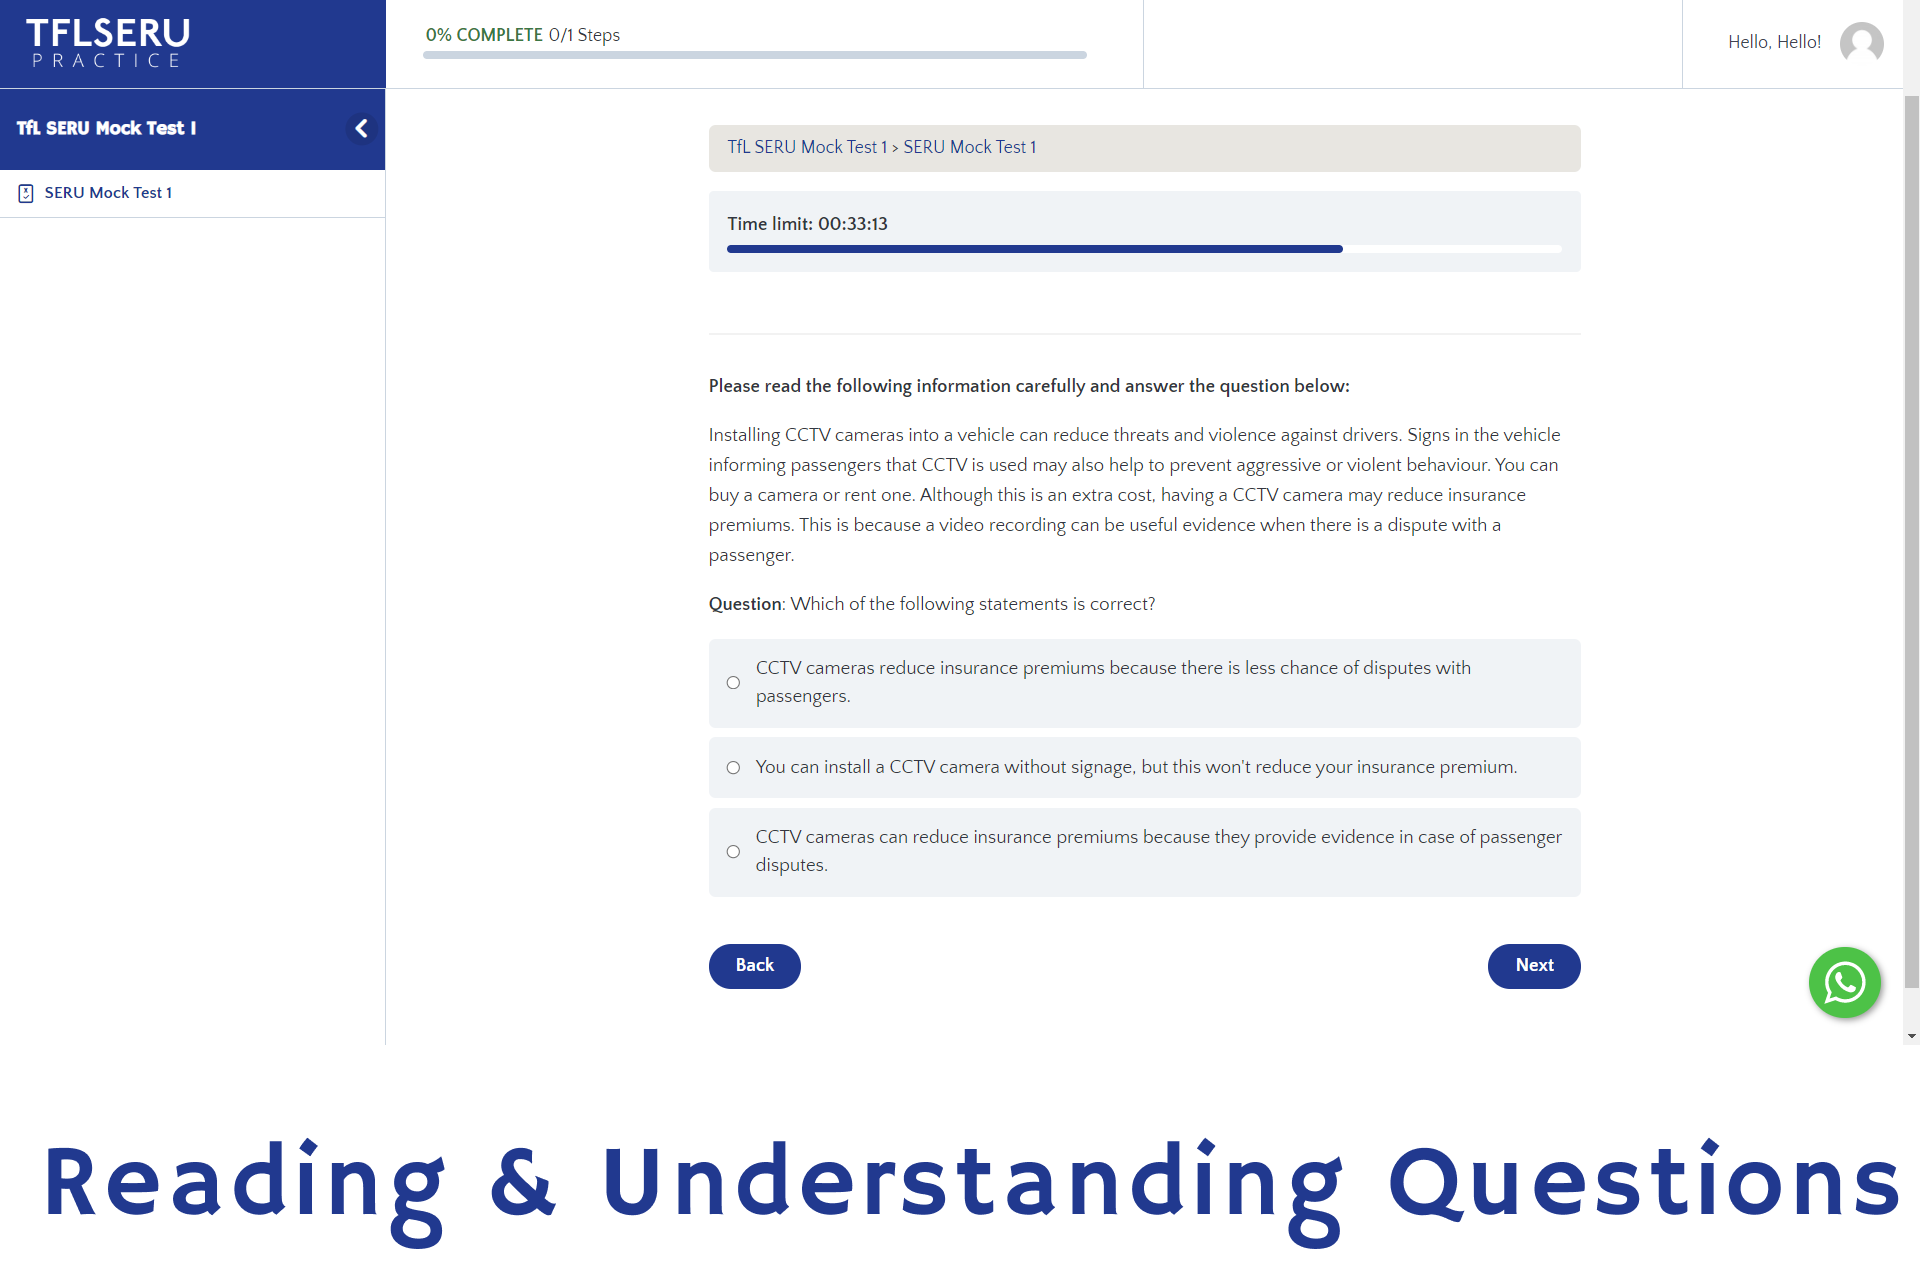 Reading & Understanding Questions